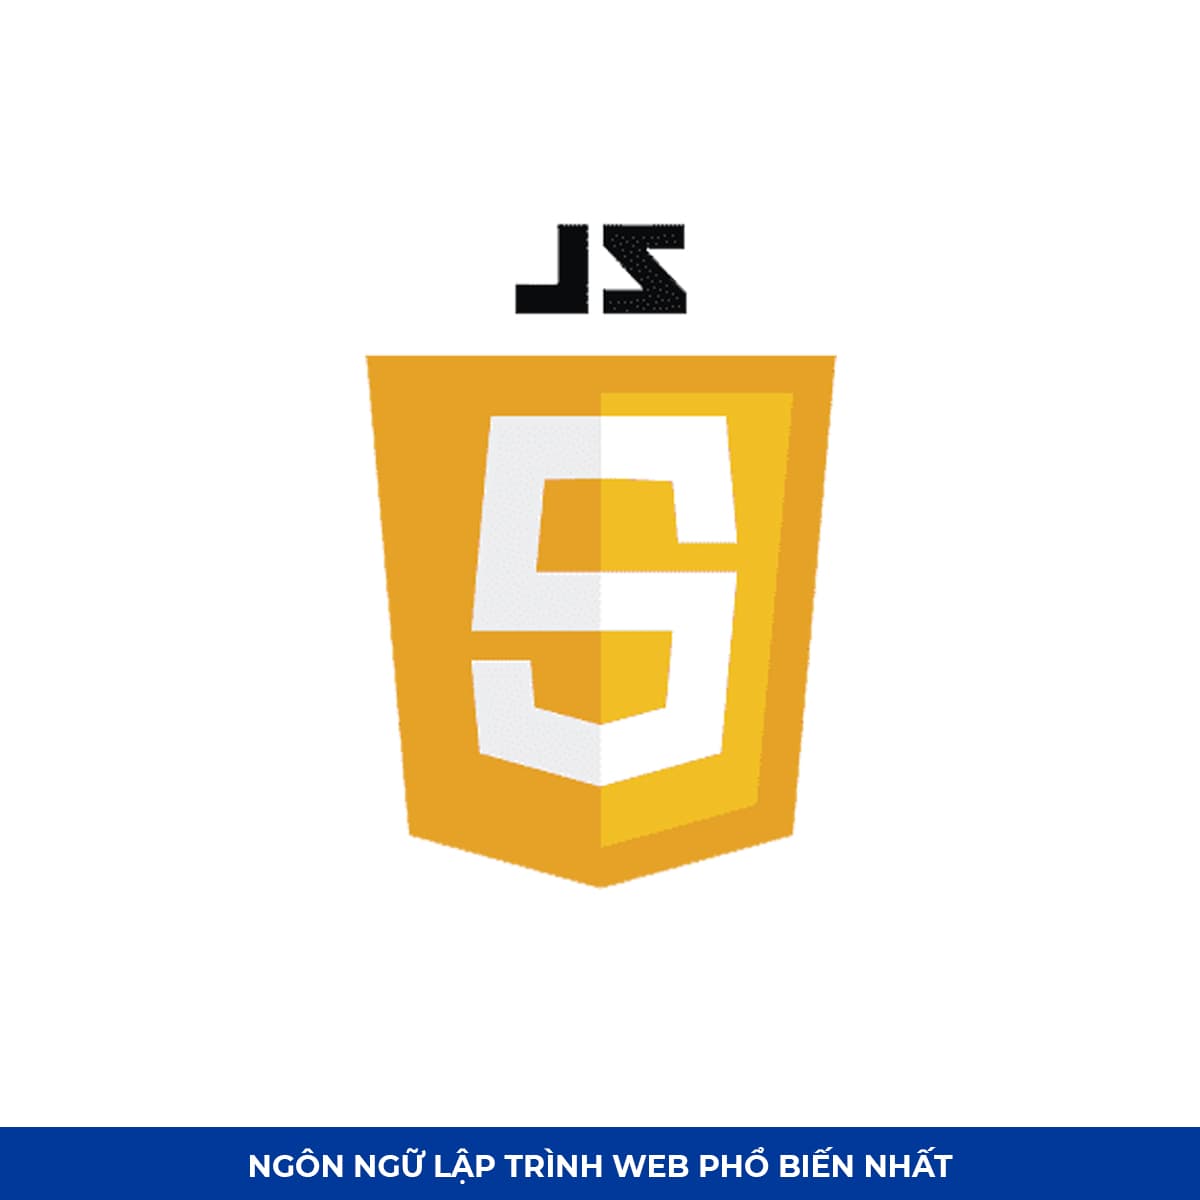 Top Ngôn ngữ lập trình web #1: JavaScript